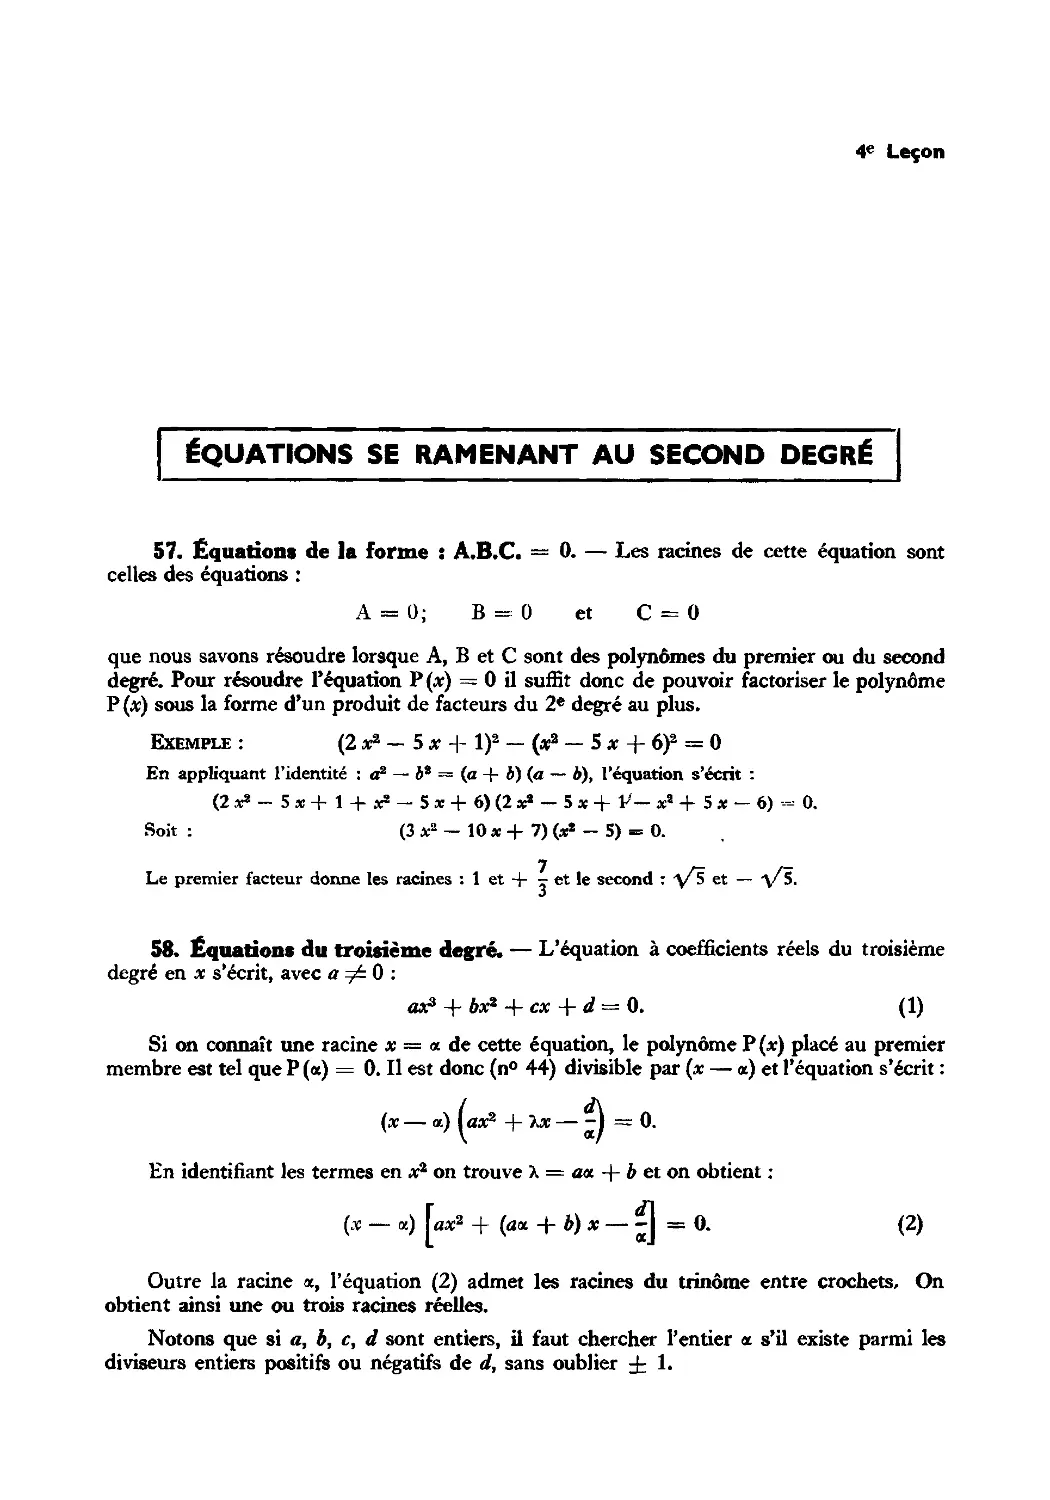 Leçon 4 — Équations et systèmes se ramenant au second degré
58. Équations du troisième degré